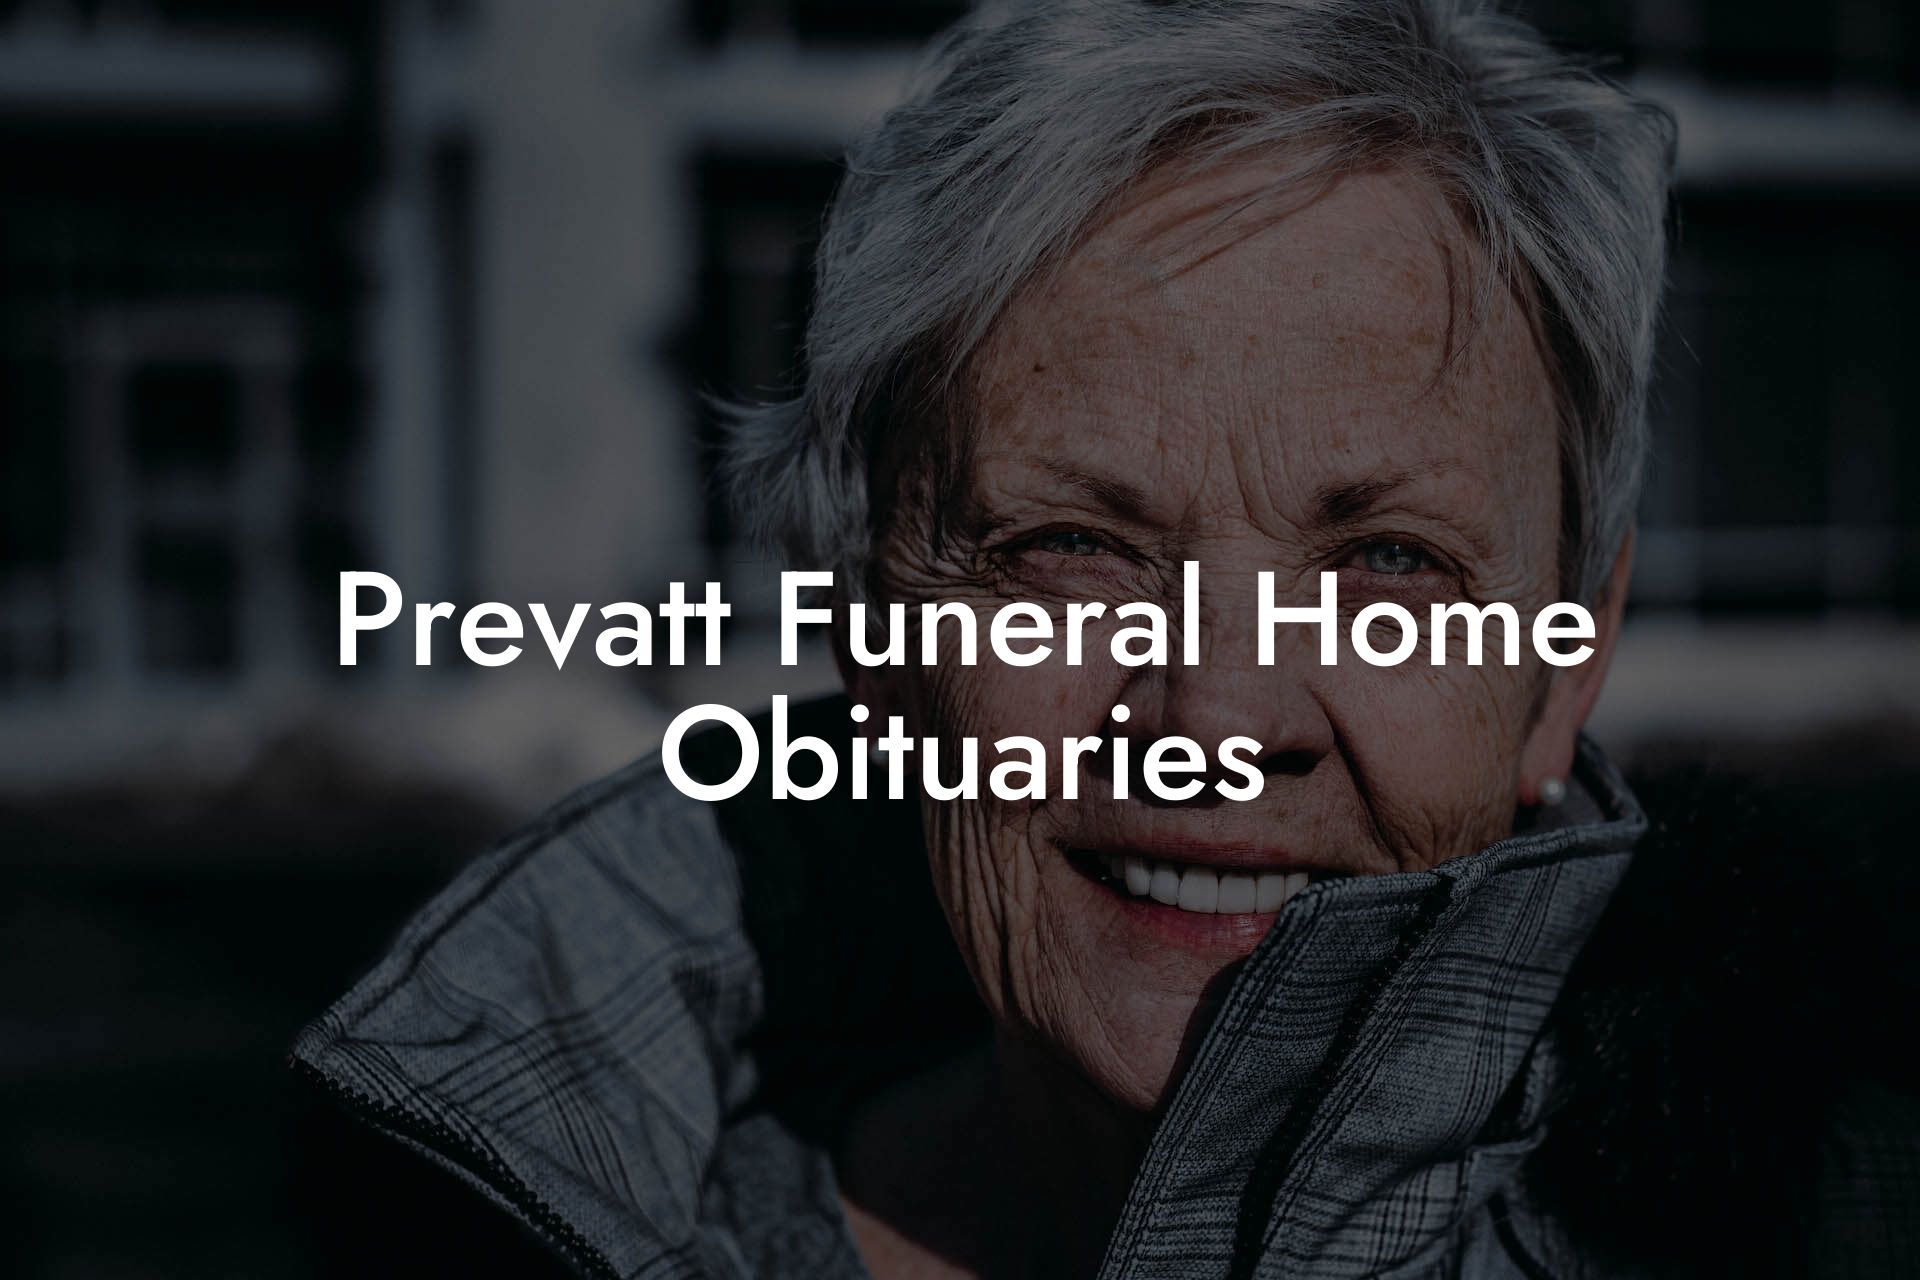 Prevatt Funeral Home Obituaries